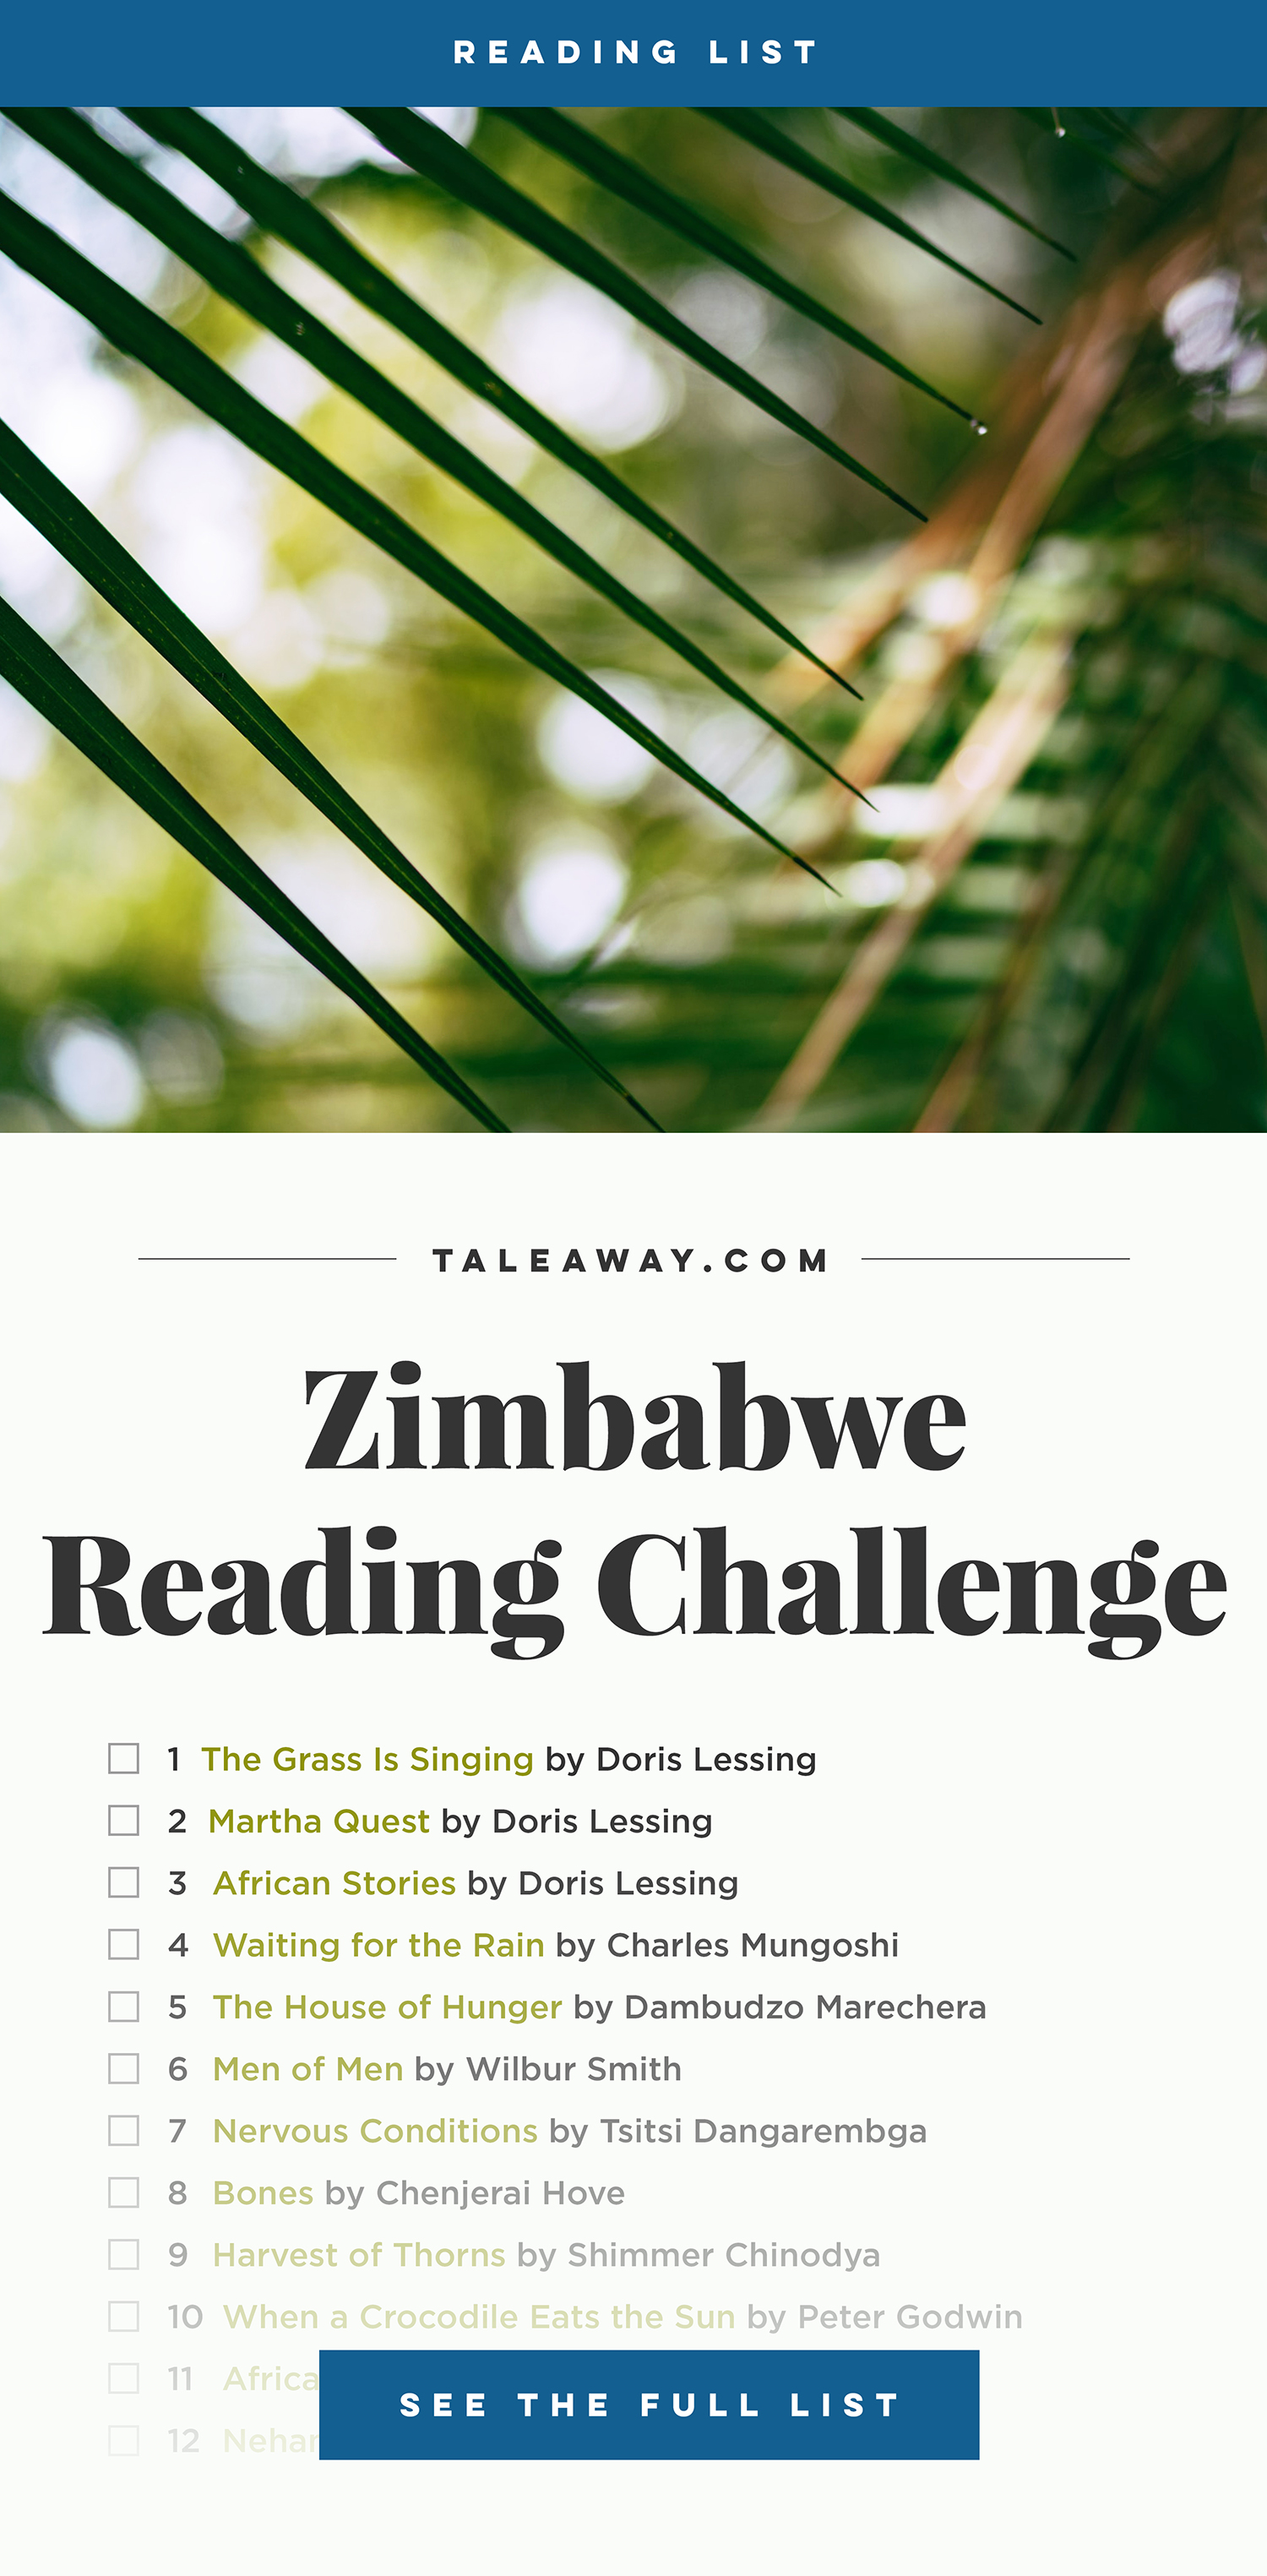 Books Set in Zimbabwe. zimbabwe books, zimbabwe novels, zimbabwe literature, zimbabwe fiction, zimbabwe authors, zimbabwe memoirs, best books set in zimbabwe, popular books set in zimbabwe, books about zimbabwe, zimbabwe reading challenge, zimbabwe reading list, harare books, bulawayo books, zimbabwe packing, zimbabwe travel, zimbabwe history, zimbabwe travel books, zimbabwe books to read, books to read before going to zimbabwe, novels set in zimbabwe, books to read about zimbabwe